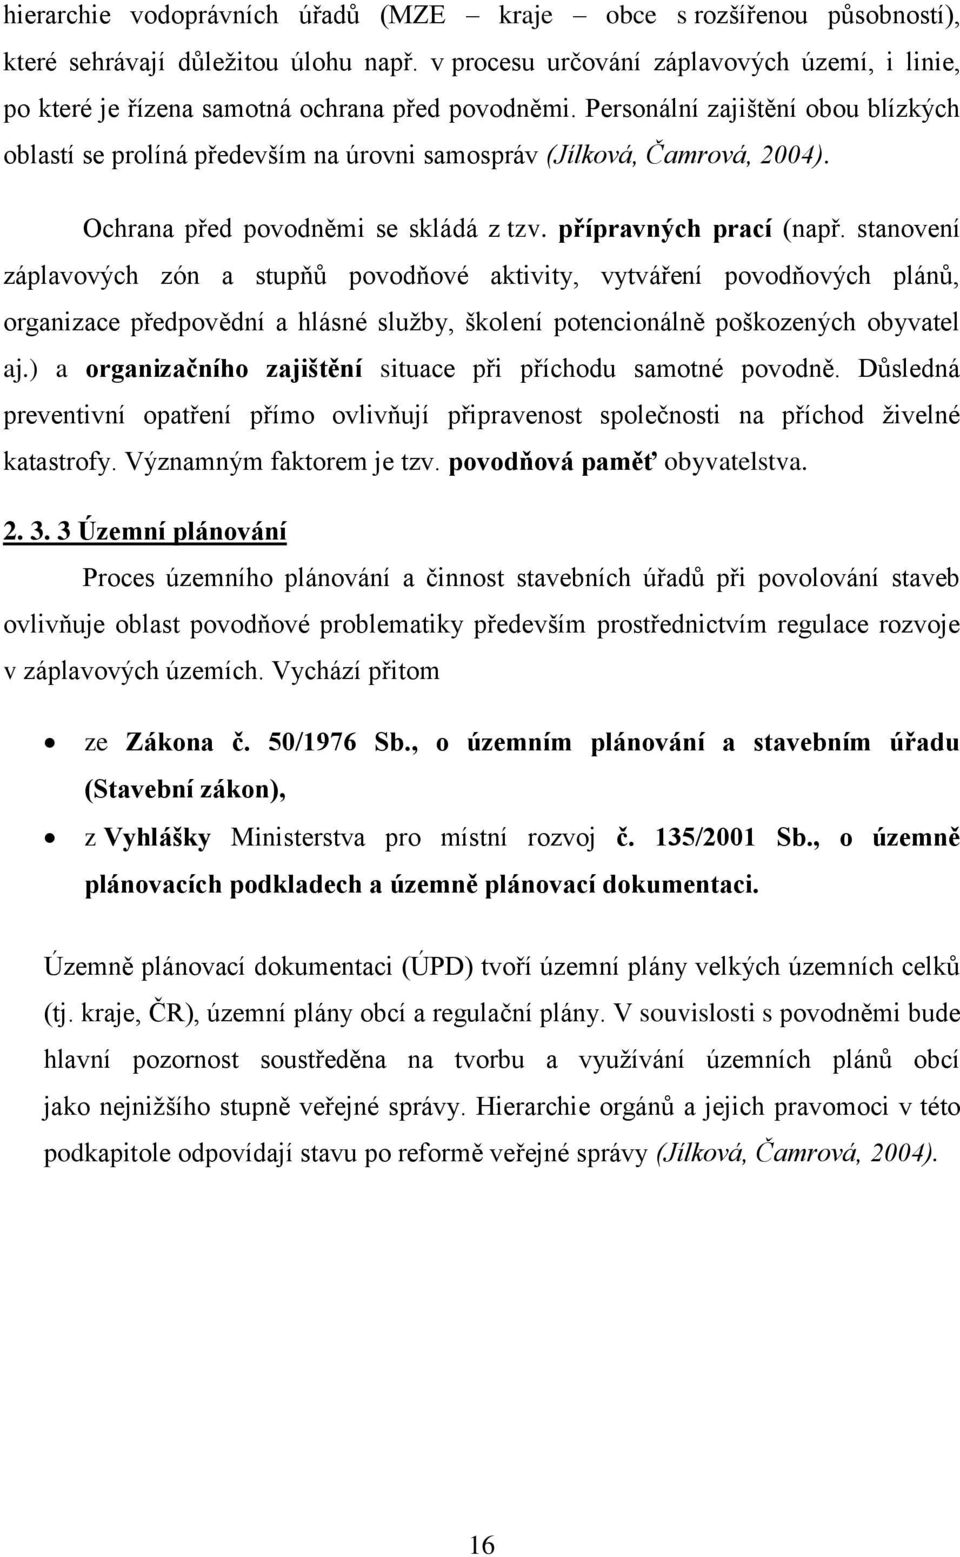 Personální zajištění obou blízkých oblastí se prolíná především na úrovni samospráv (Jílková, Čamrová, 2004). Ochrana před povodněmi se skládá z tzv. přípravných prací (např.